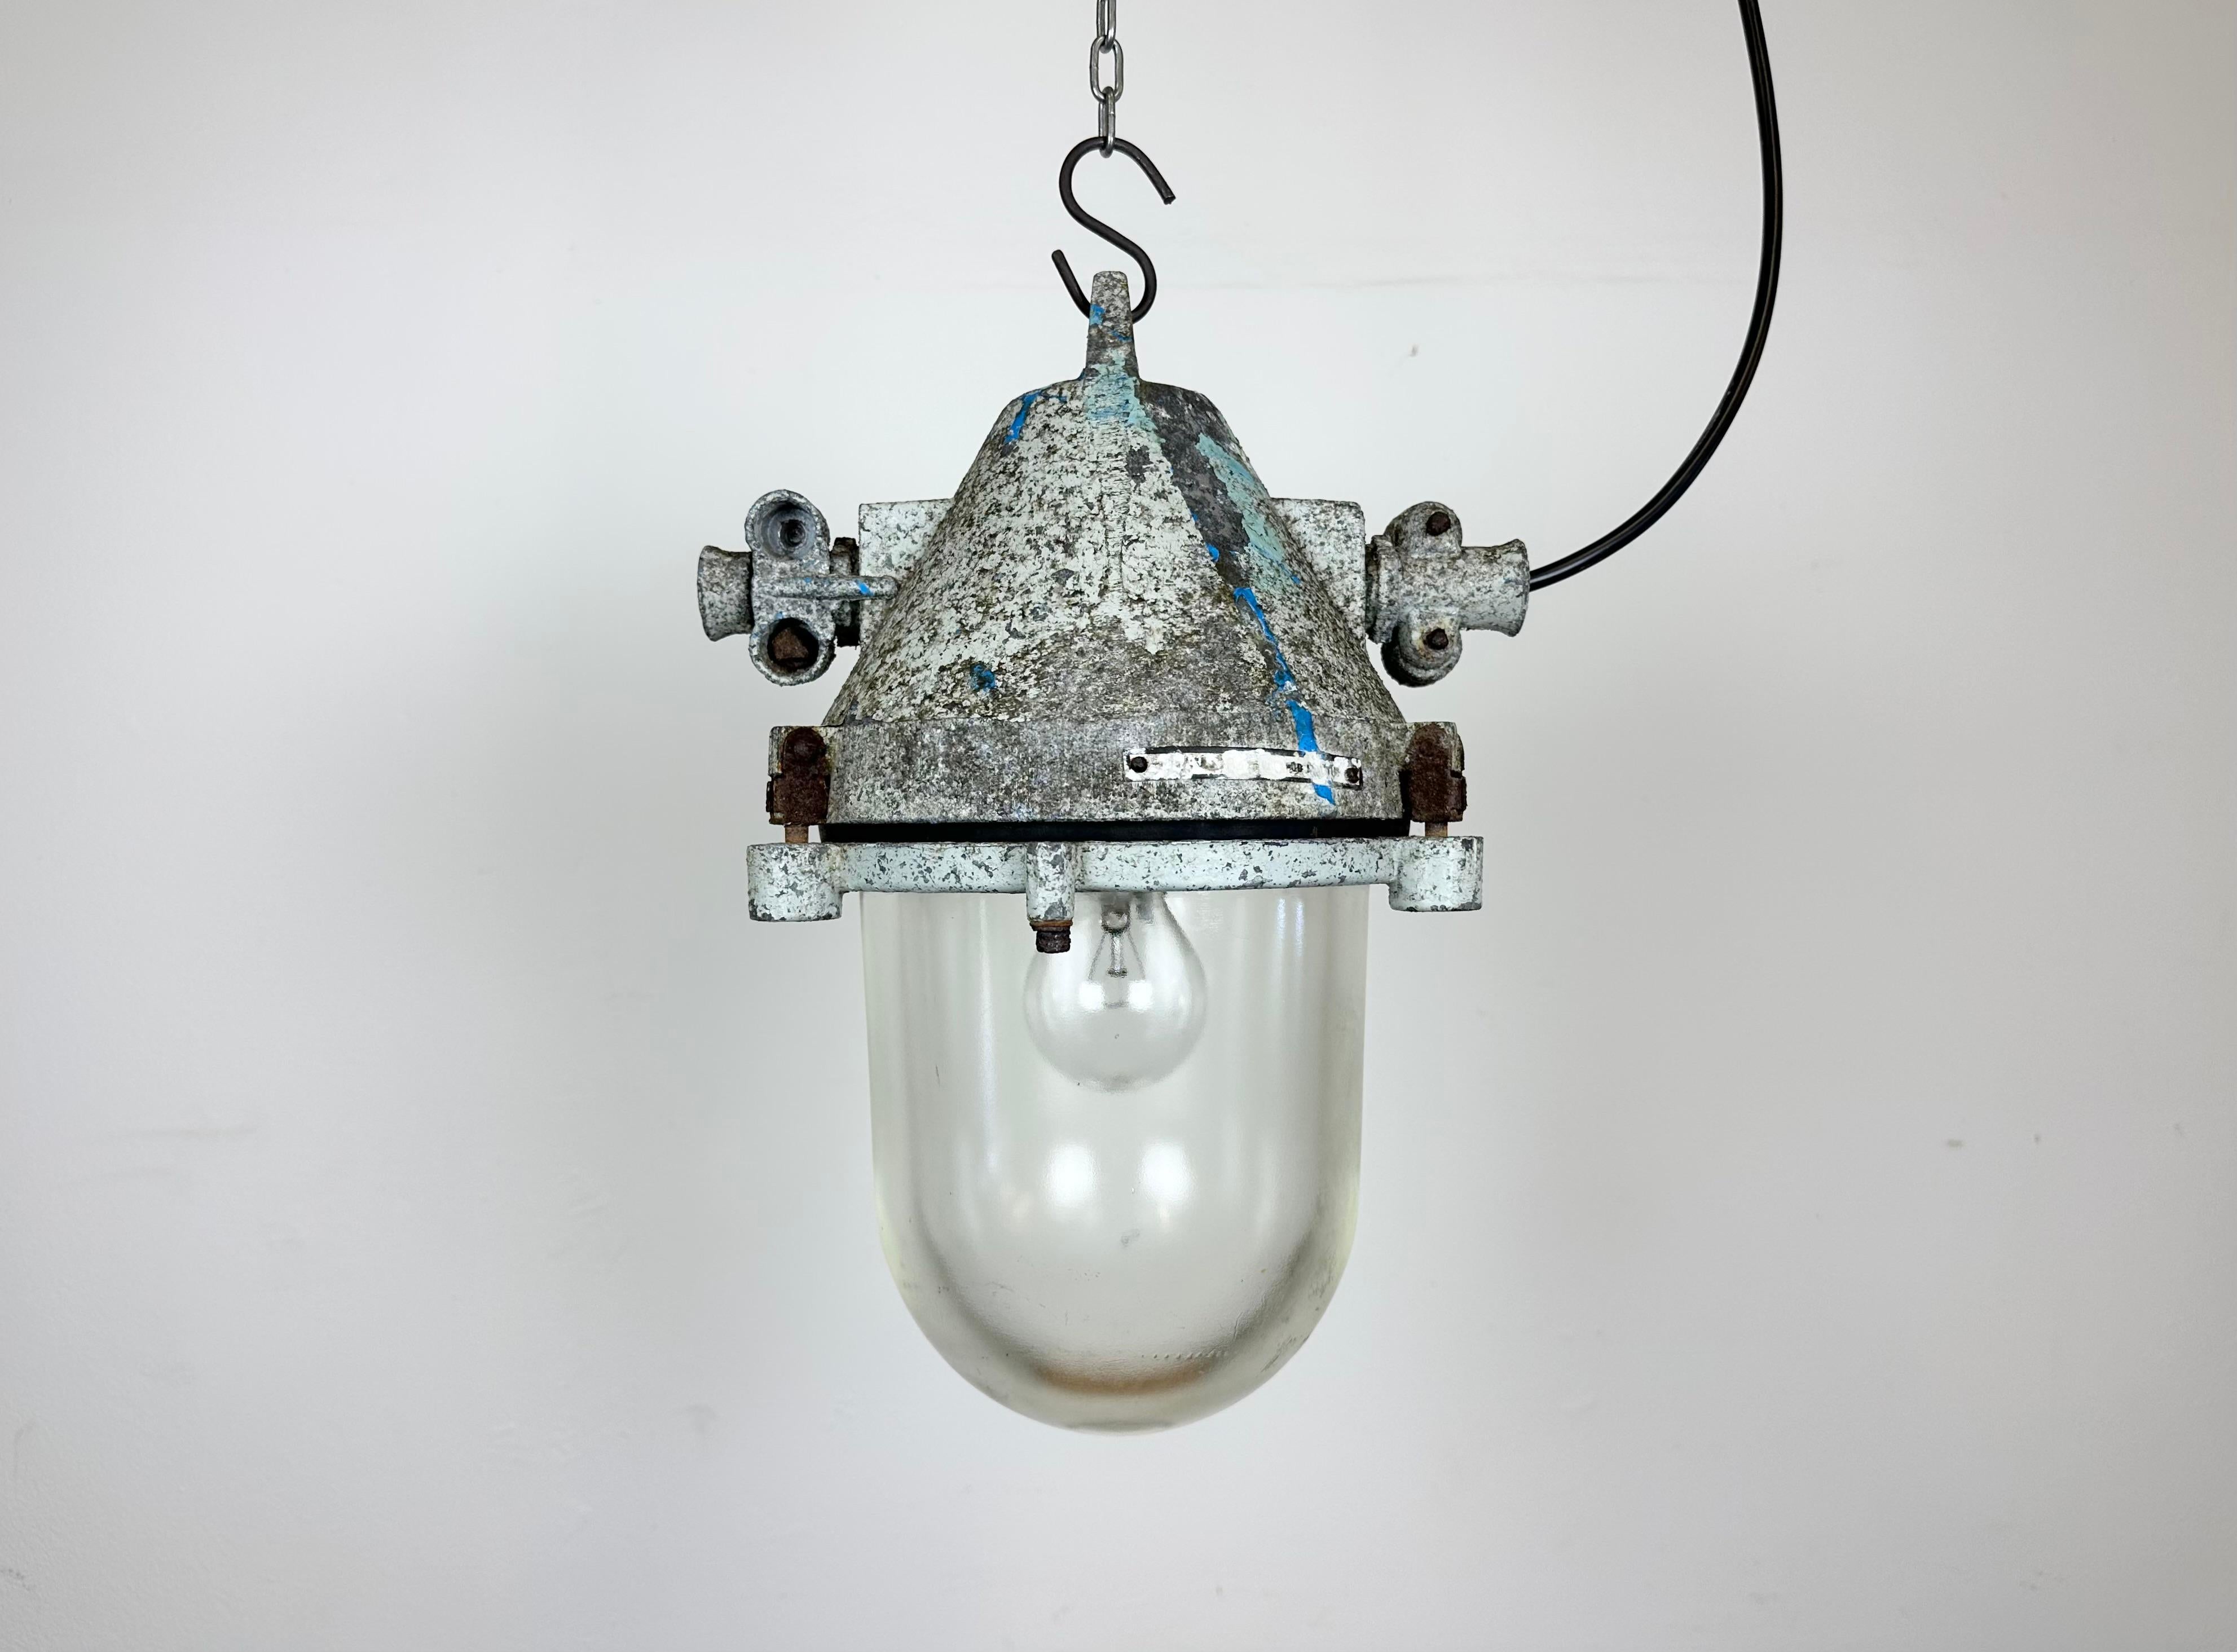 Lampe industrielle grise antidéflagrante avec ampoule en verre massif de protection. Fabriqué dans l'ancienne Tchécoslovaquie par Elektrosvit dans les années 1970. Il se compose d'un corps en aluminium moulé et d'un couvercle en verre transparent.